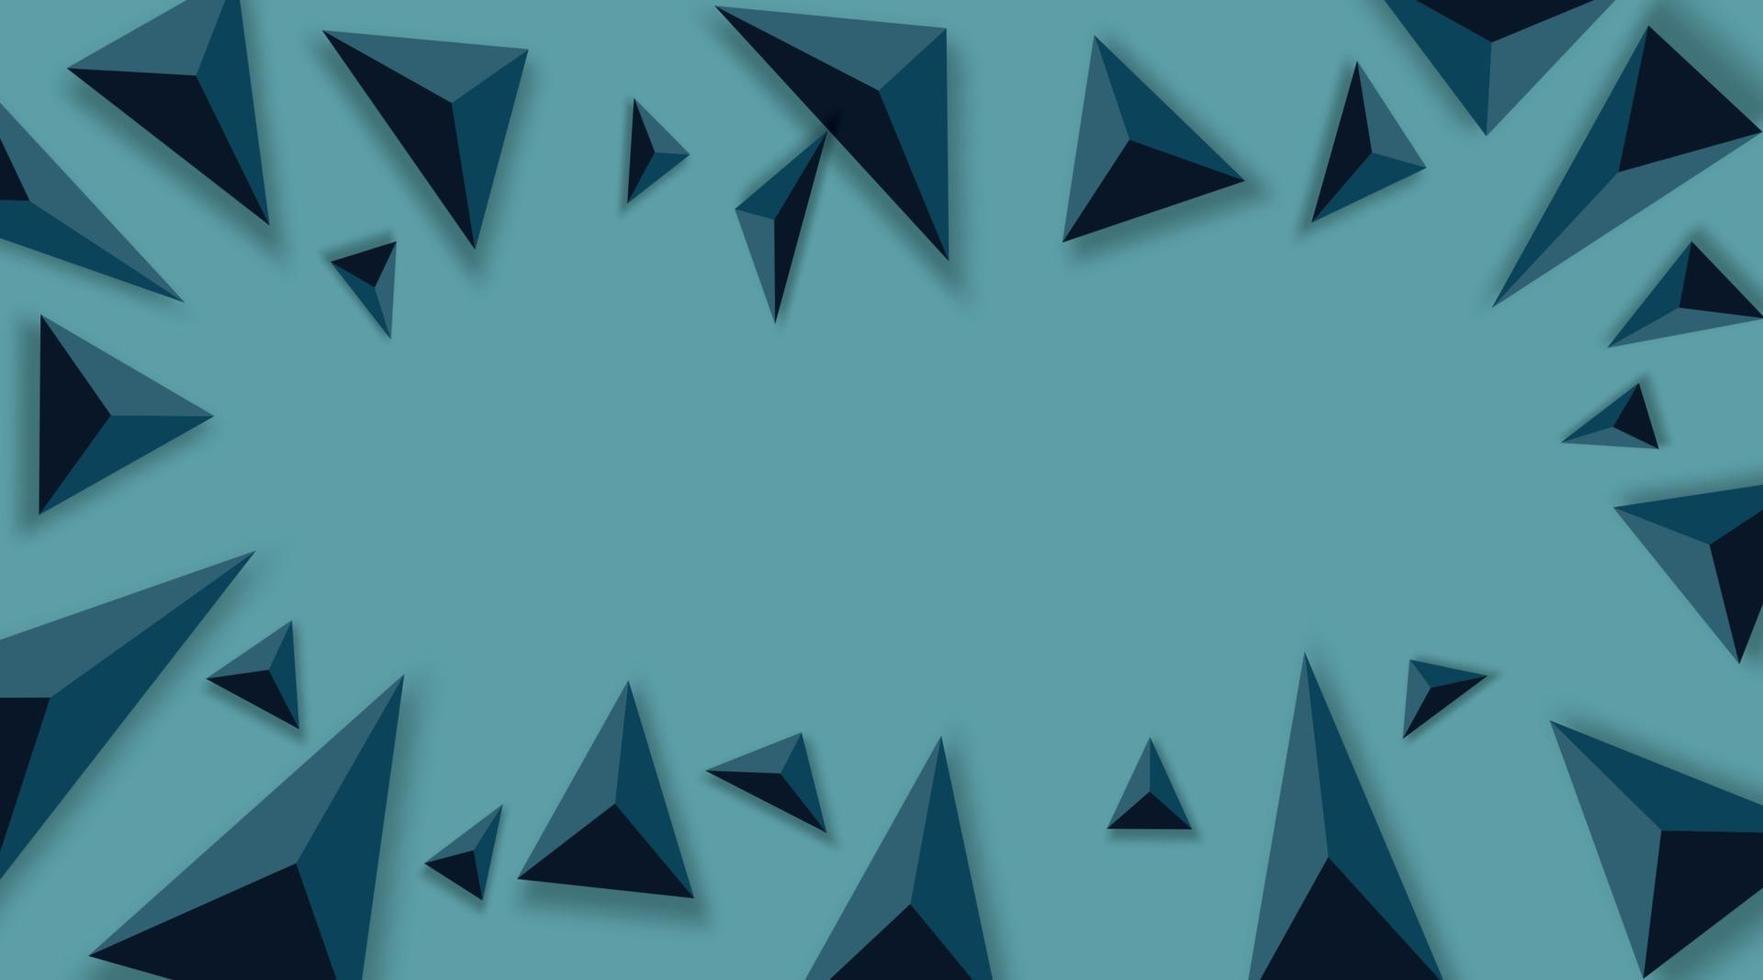 sfondo astratto con triangoli neri. realistico e 3d. illustrazione vettoriale su sfondo blu.